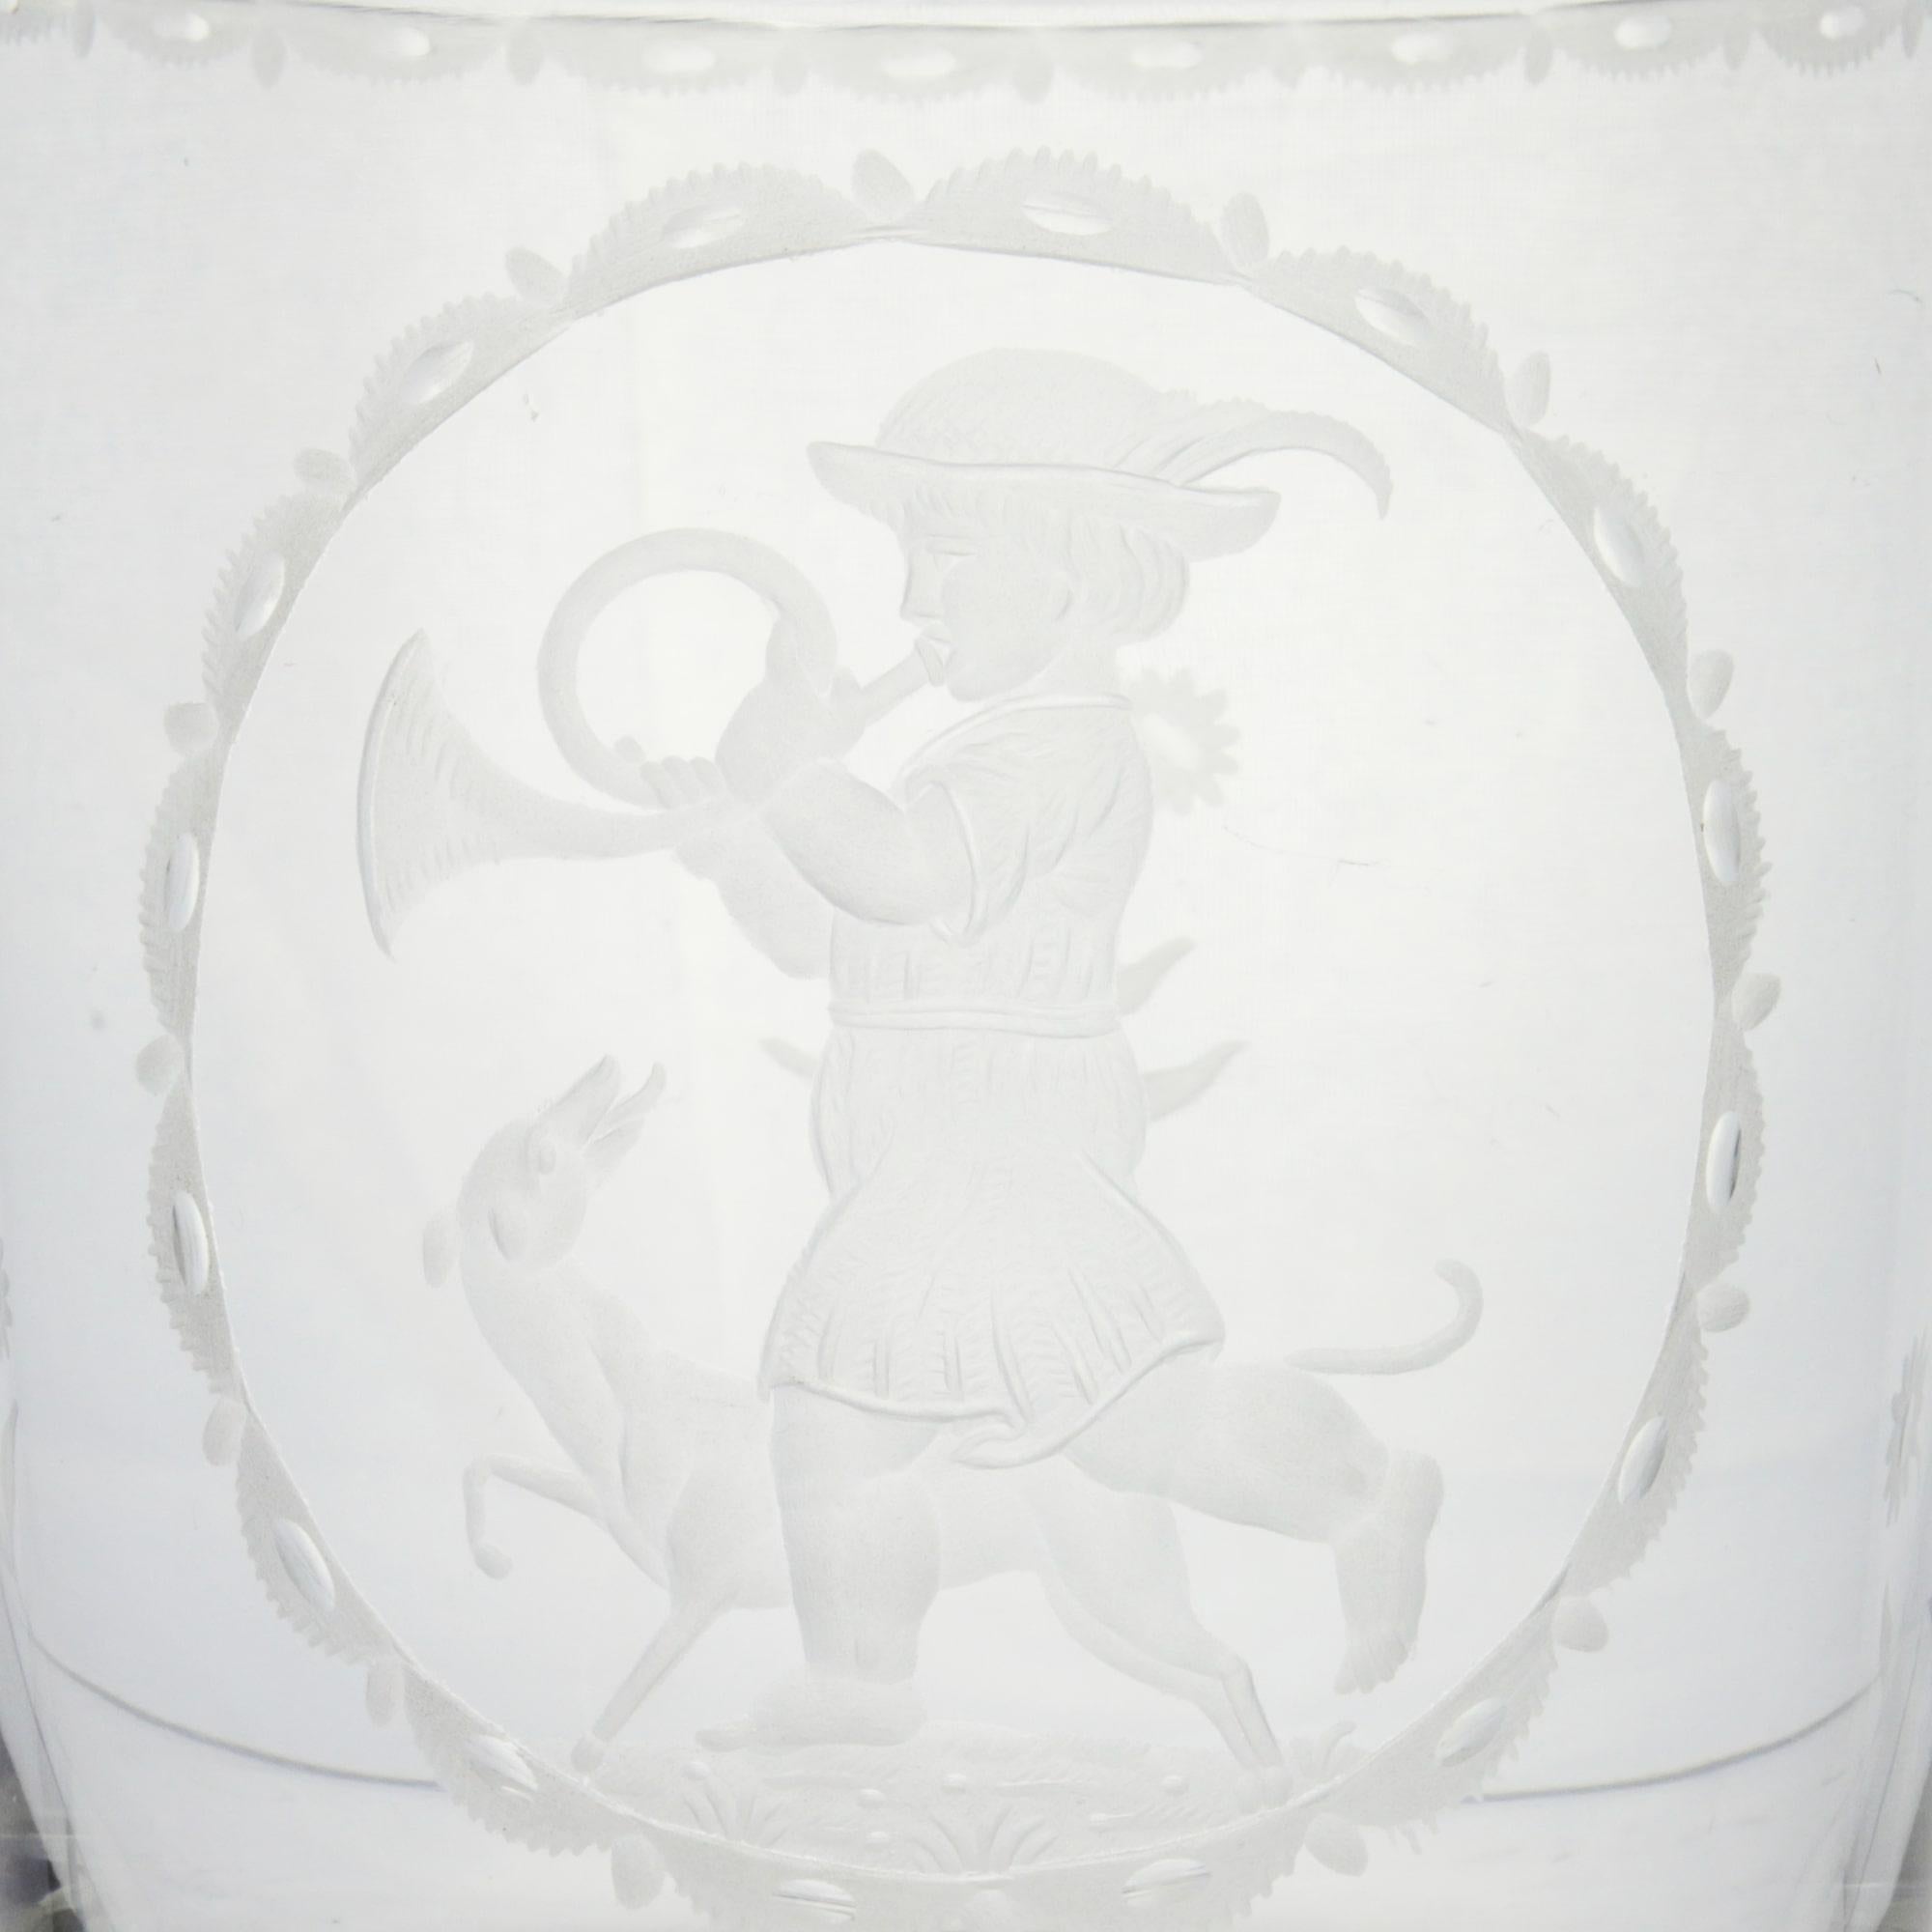 Un très beau gobelet en verre gravé conçu par Michael Powolny (1871-1954) pour Lobmeyr de Vienne. La pièce représente un garçon avec une corne et un chien à l'intérieur d'un médaillon gravé, représentant le mois de novembre. Le modèle date d'environ